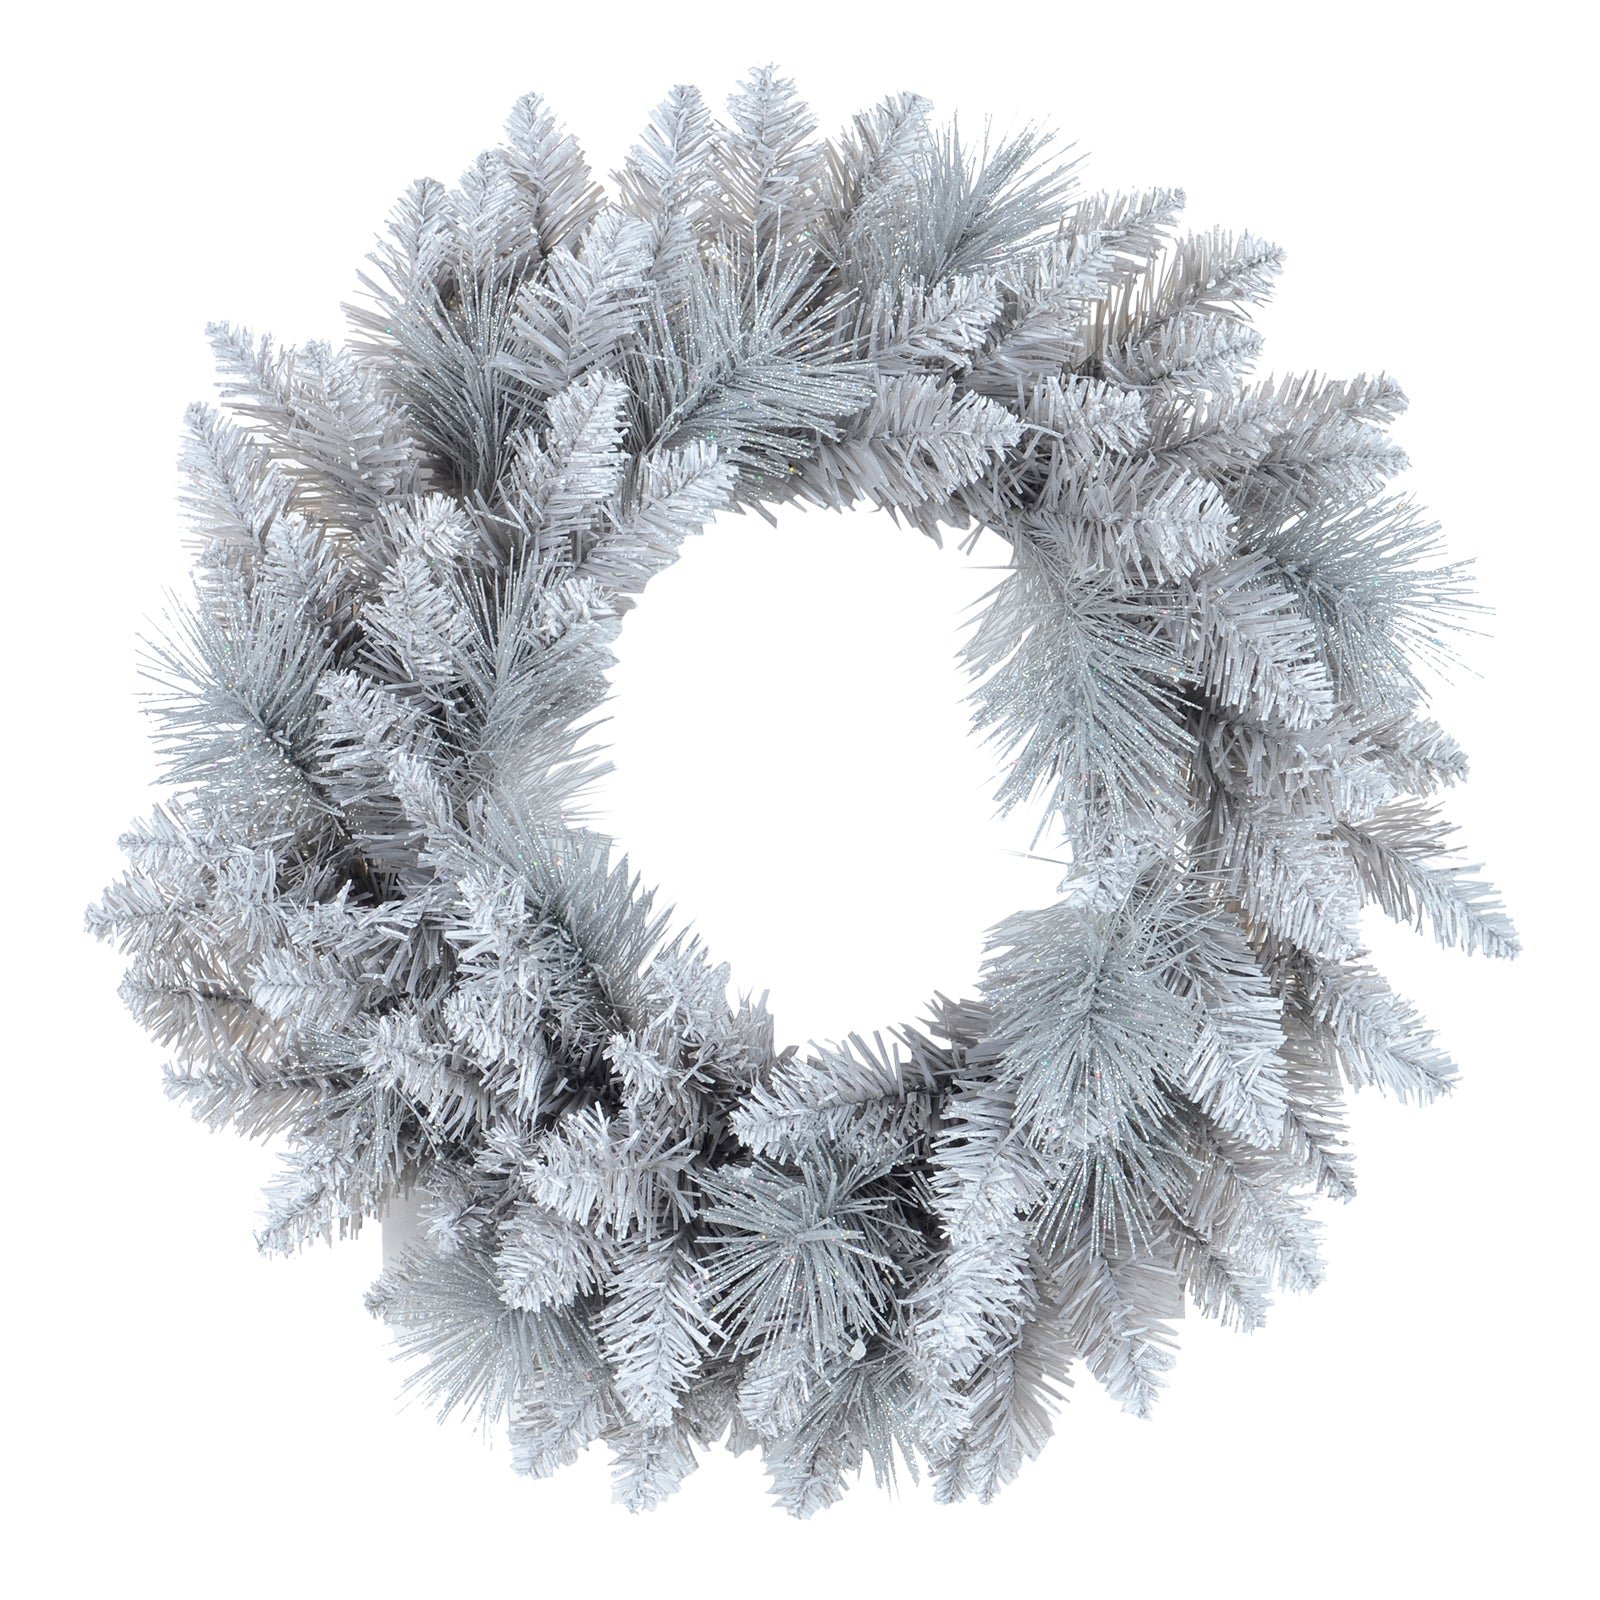 Mr Crimbo Christmas Wreath Silver Glitter Frosted Pine 20" - MrCrimbo.co.uk -XS6432 - -Decorations